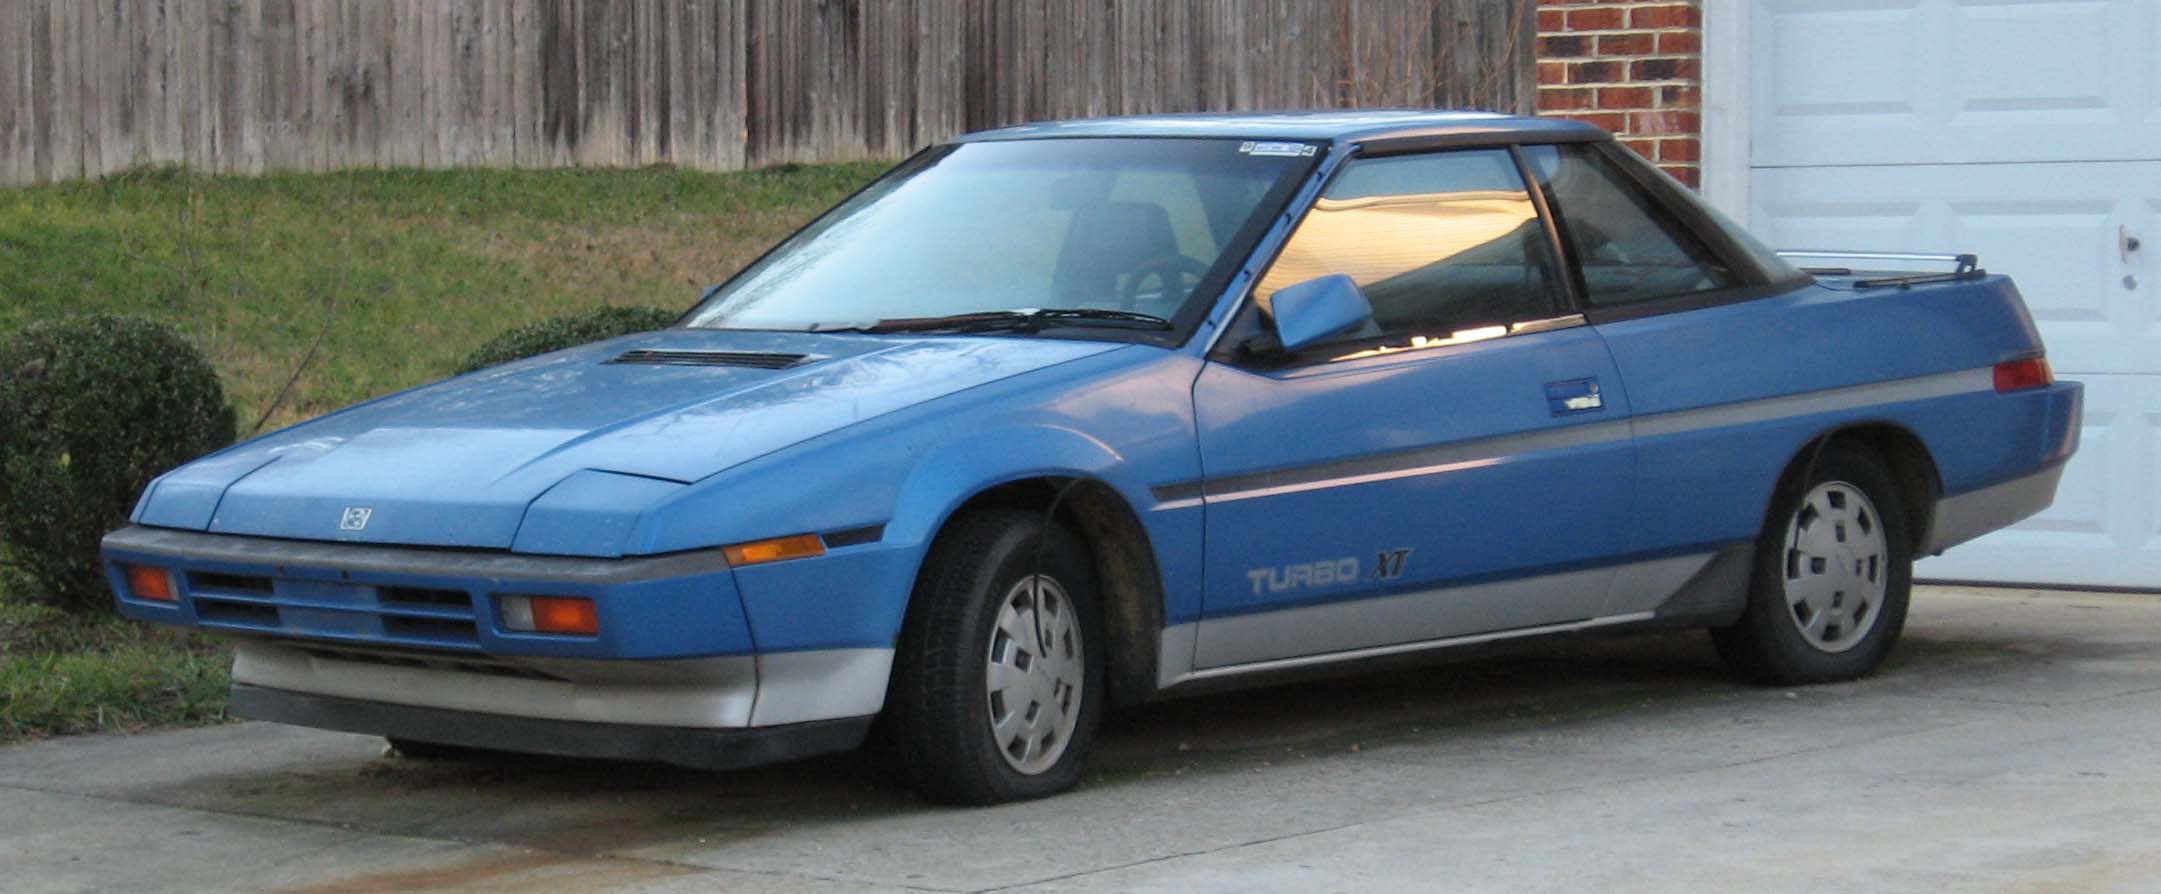 Subaru XT 1988 #1